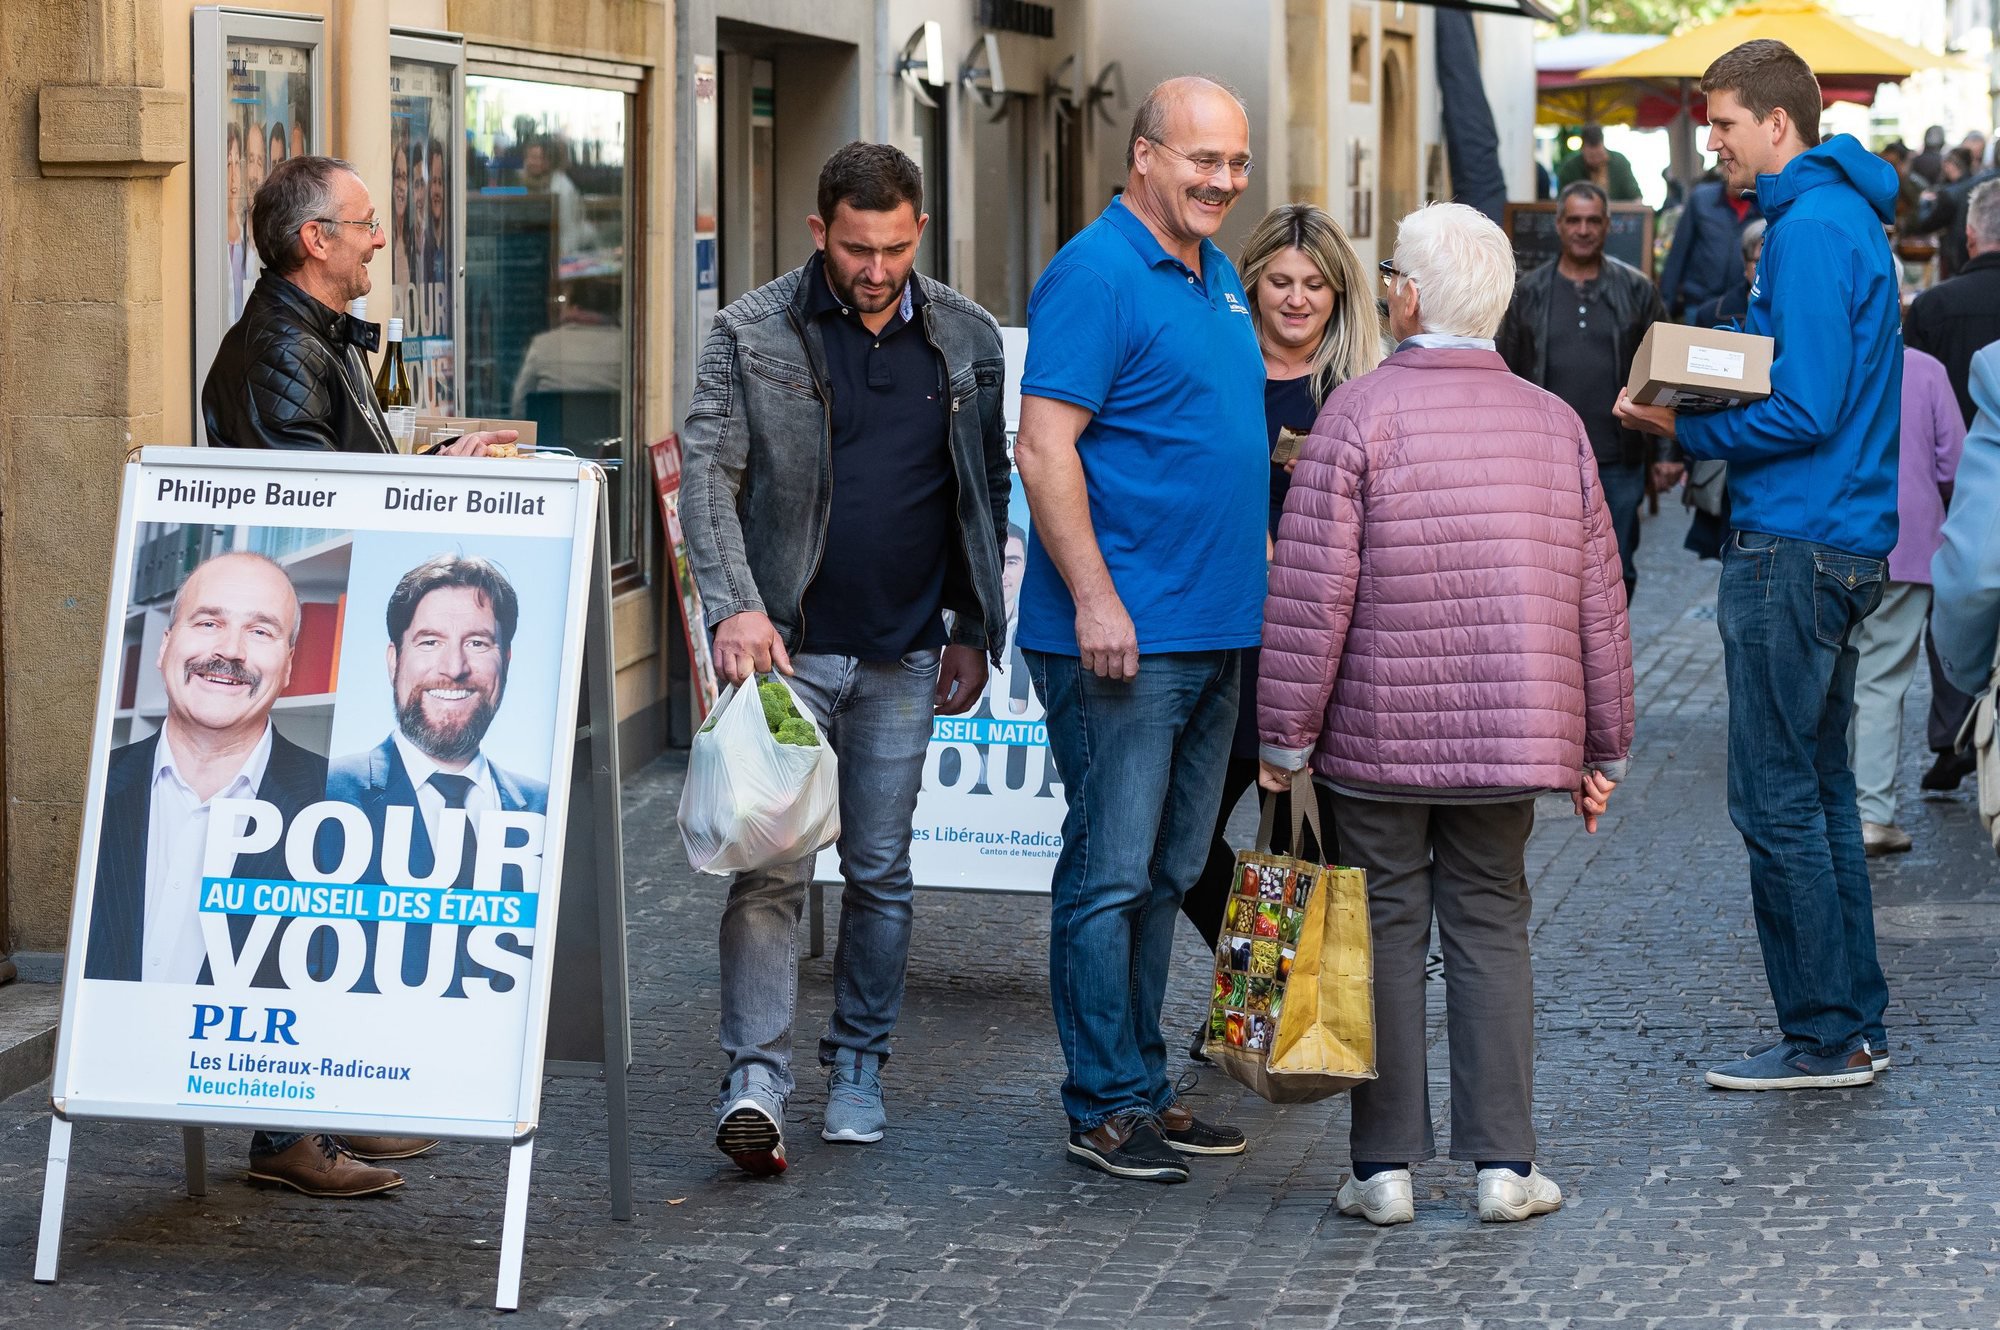 La campagne personnelle des candidats neuchâtelois aux élections fédérales se limite essentiellement à la participation aux stands du parti. Par exemple, Philippe Bauer sur le stand du PLR samedi matin à Neuchâtel.